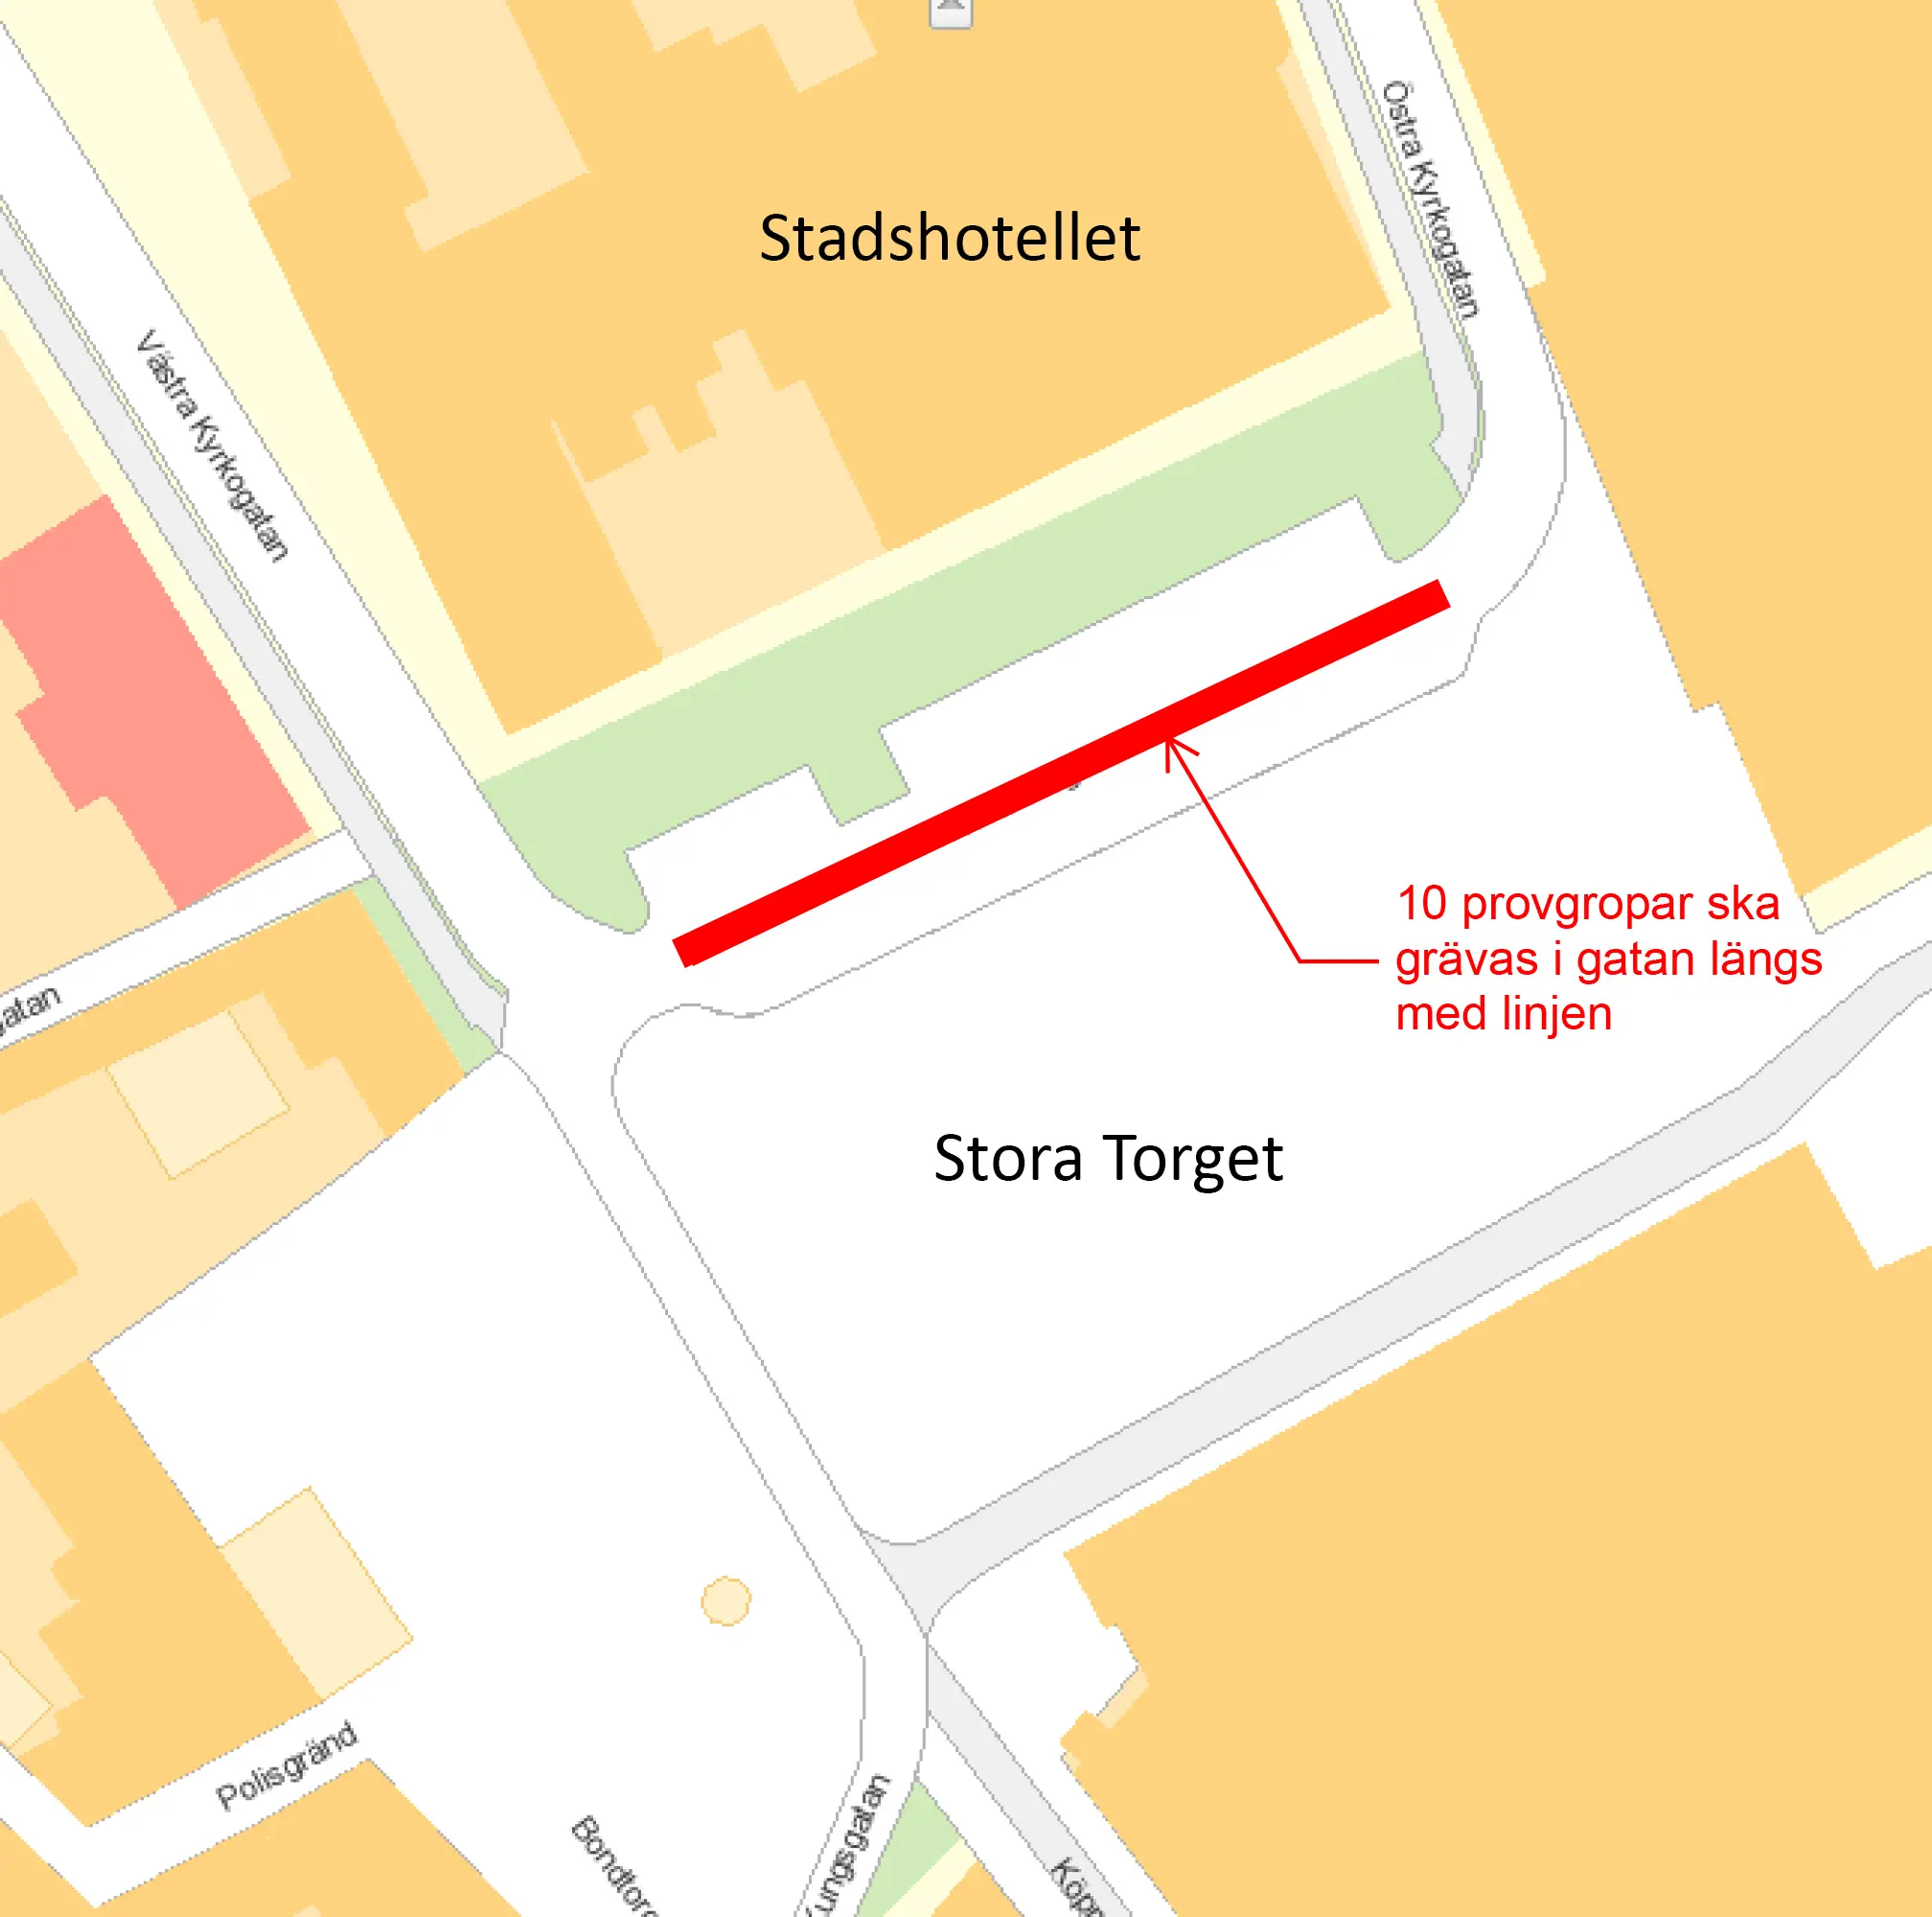 Vi kommer att gräva på gång- och cykelbanan längs Sigmahuset, på torgytan samt vid trottoaren och parkeringarna framför Stadshotellet.